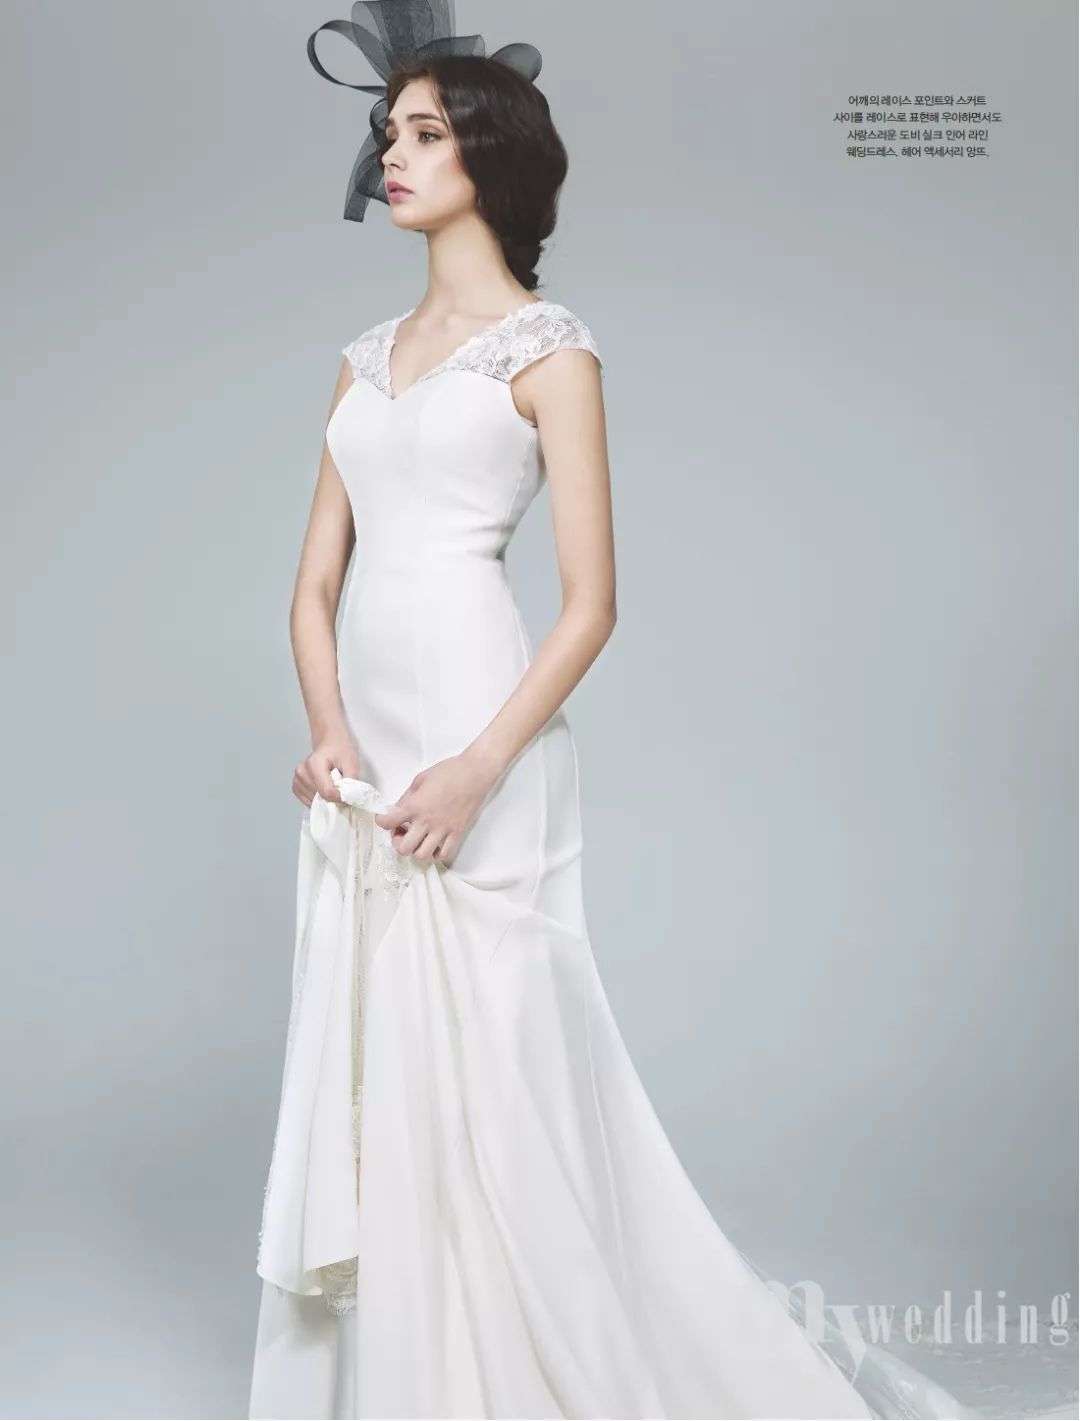 2018韩式婚纱造型_厦门艾尔文视觉2018高定婚纱造型发布：一针一线,追寻艺术之美